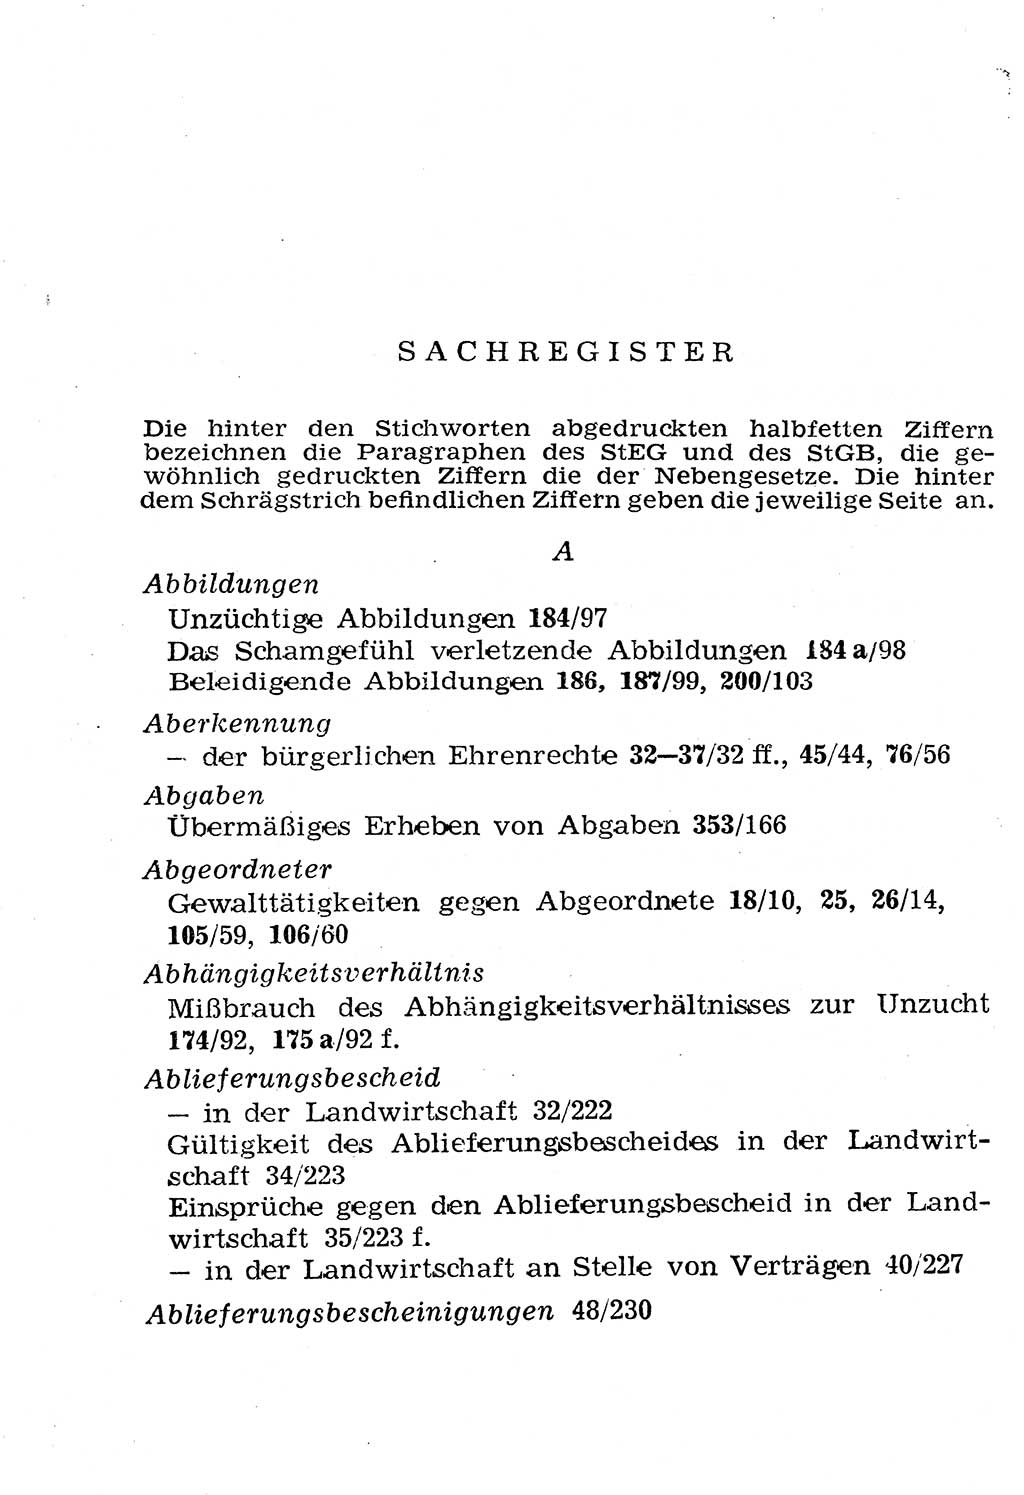 Strafgesetzbuch (StGB) und andere Strafgesetze [Deutsche Demokratische Republik (DDR)] 1958, Seite 434 (StGB Strafges. DDR 1958, S. 434)